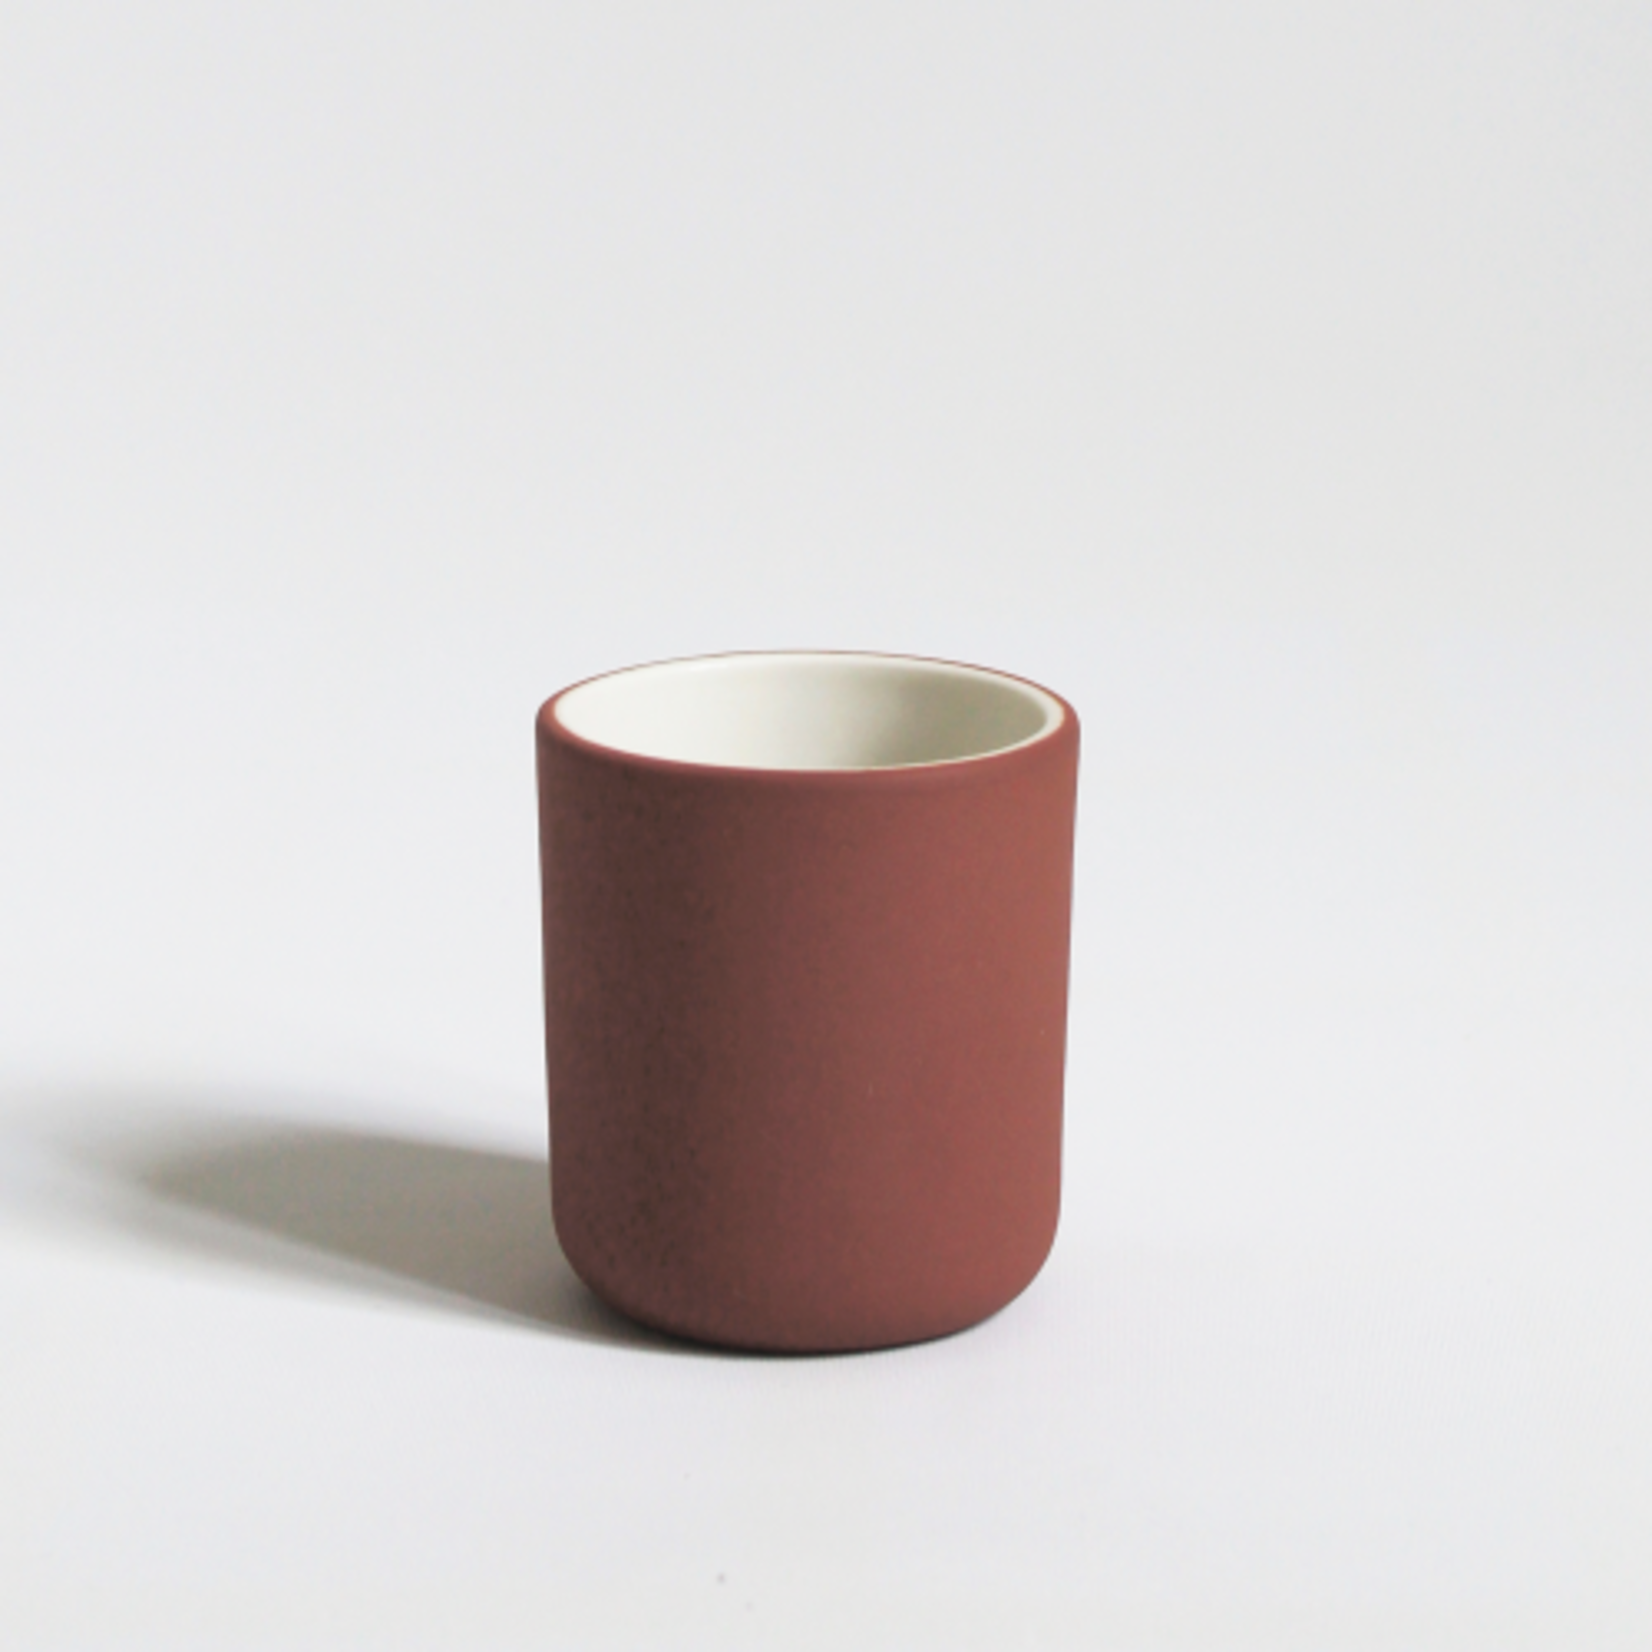 Archive Studio Archive Studio Handmade Espresso Cup Terracotta